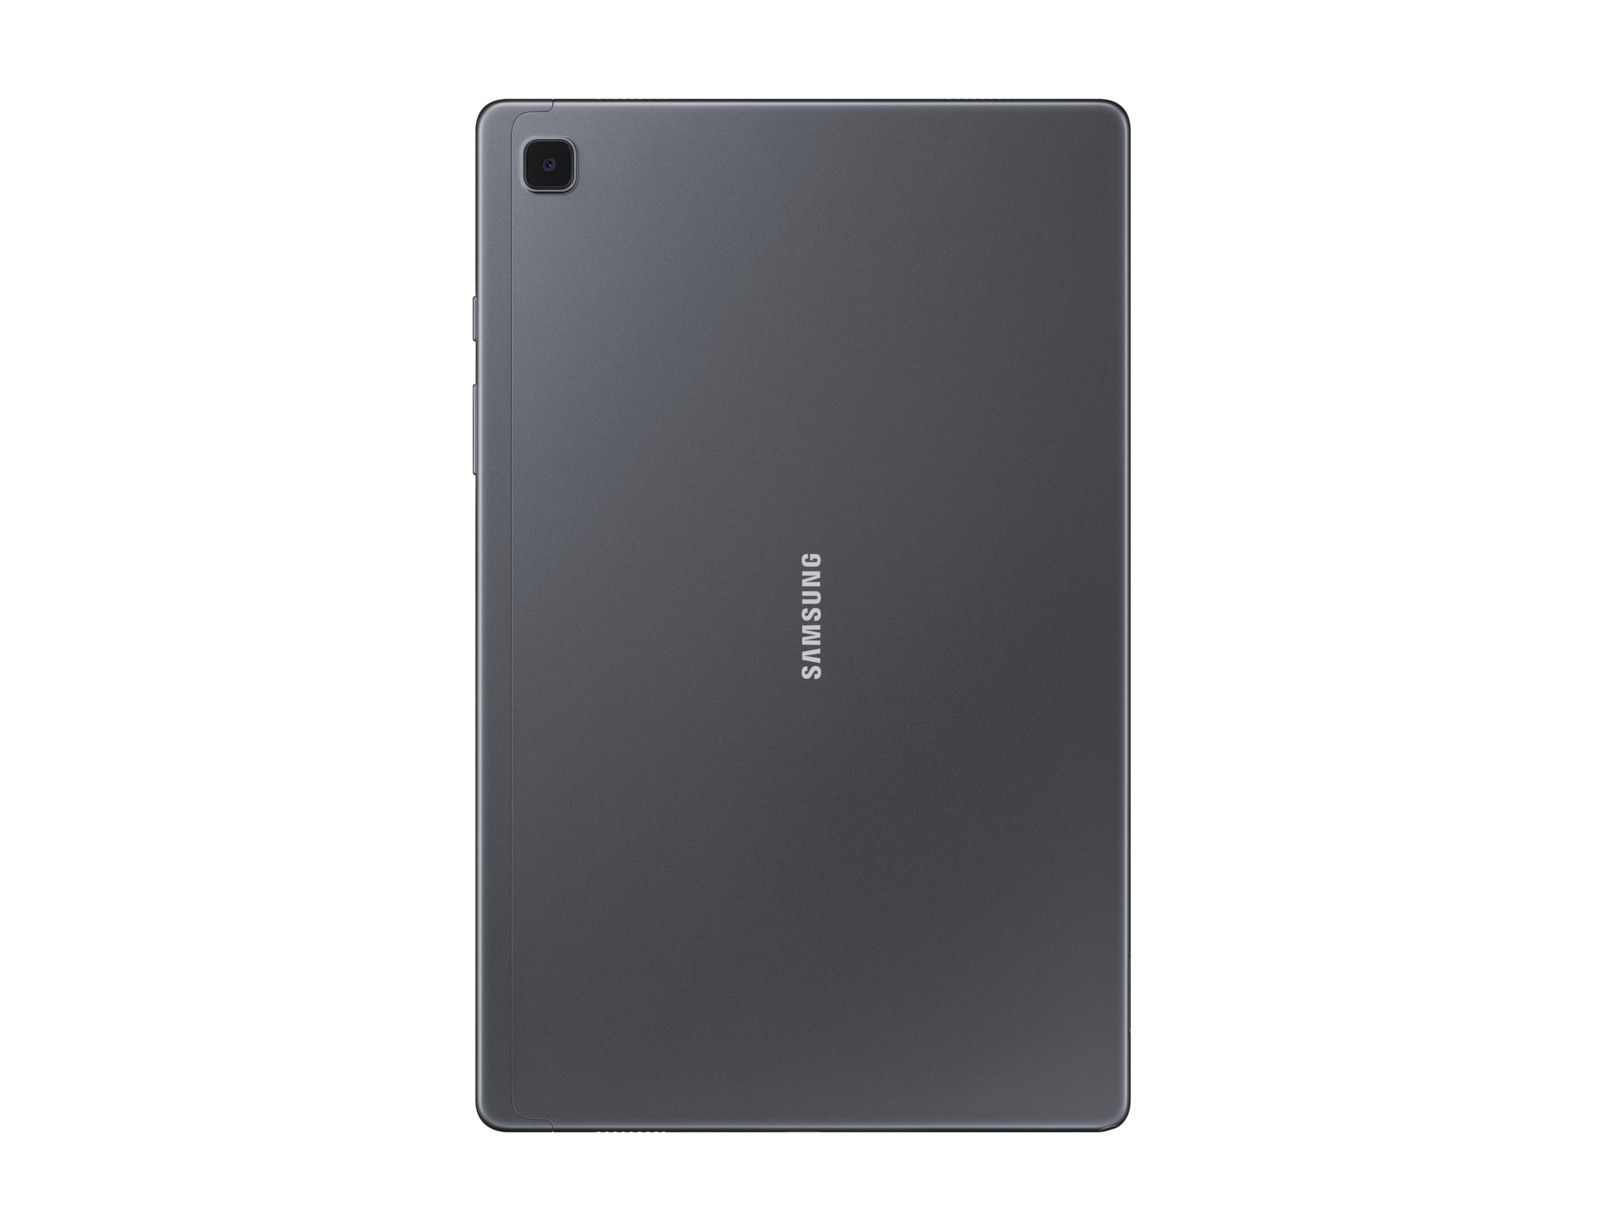 Tablet Samsung Galaxy Tab SM-T500N 32 GB 26,4 cm (10.4